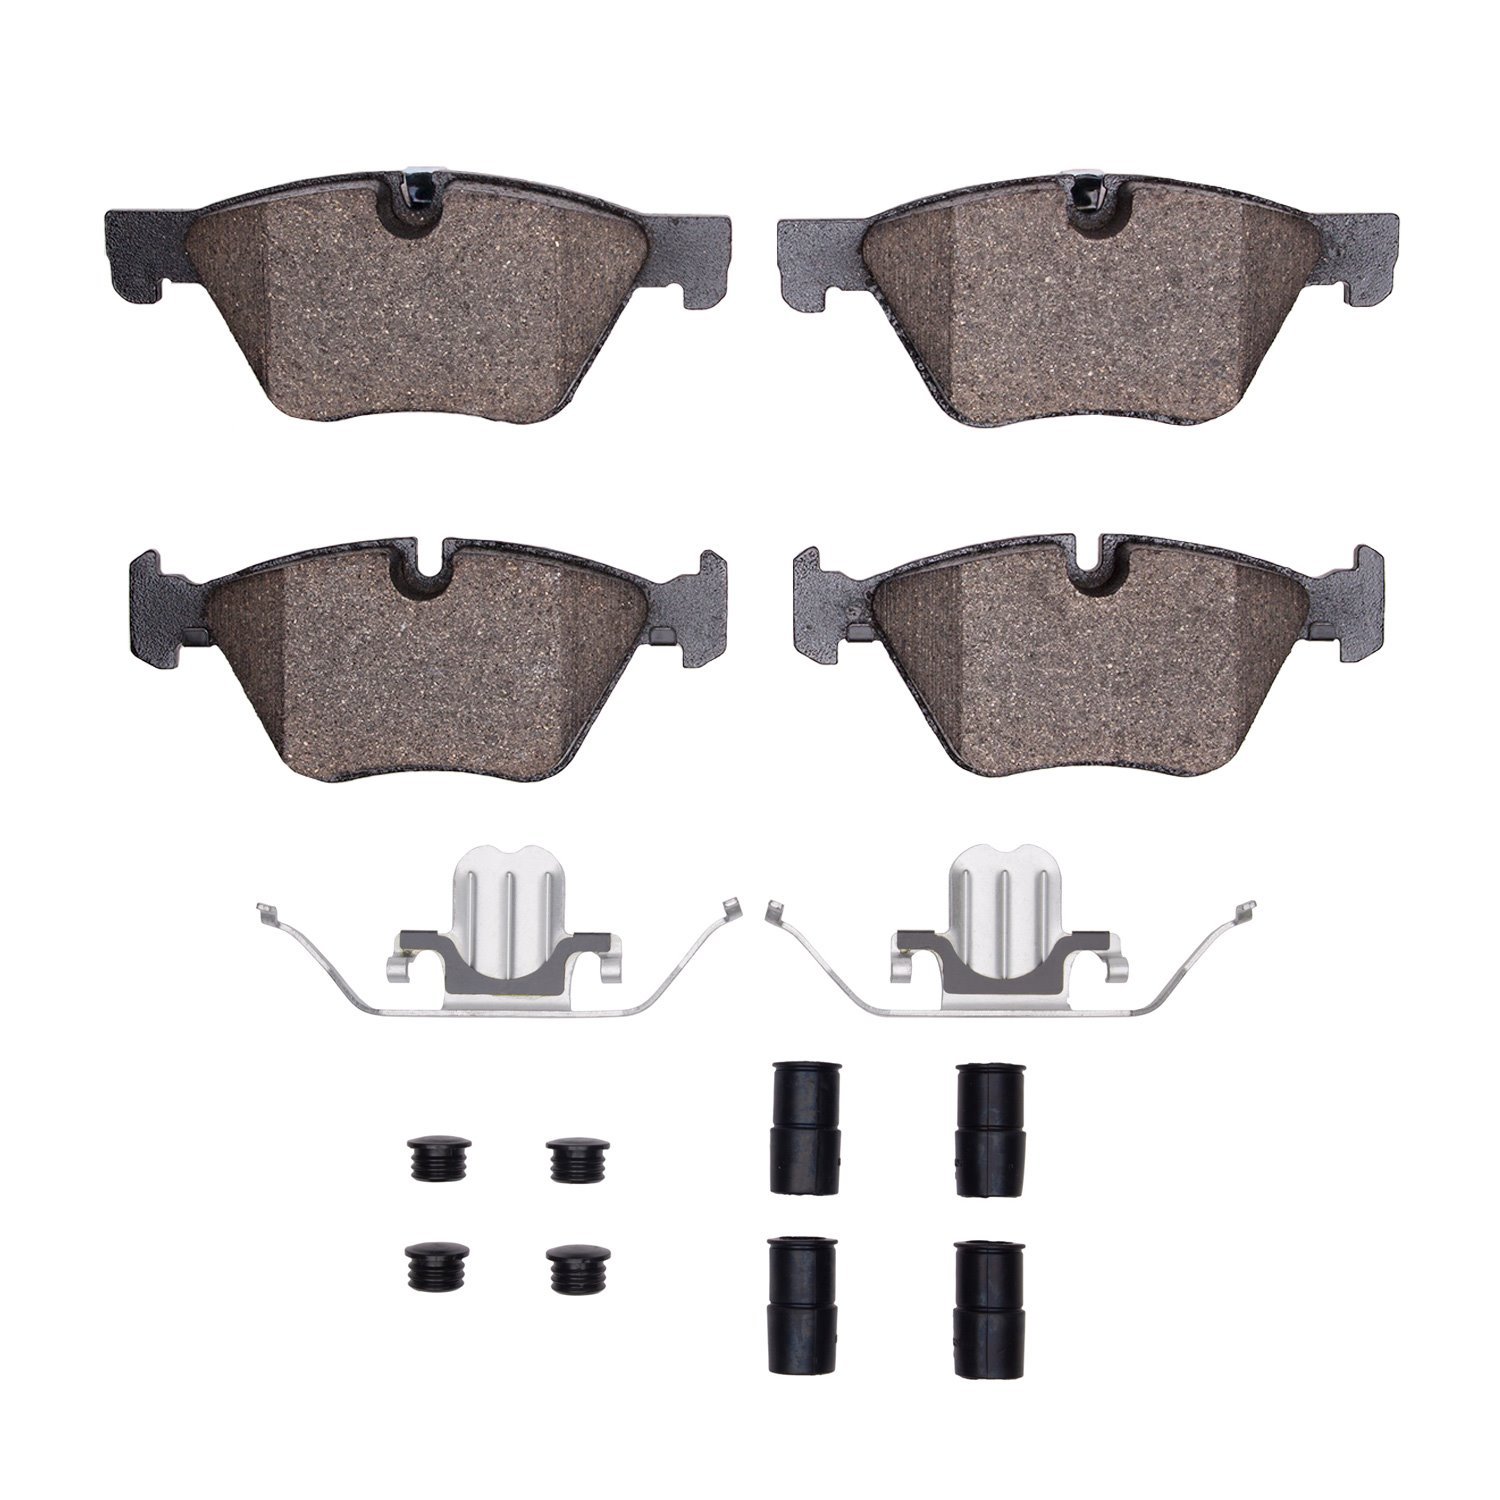 1551-1504-01 5000 Advanced Low-Metallic Brake Pads & Hardware Kit, 2011-2011 BMW, Position: Front